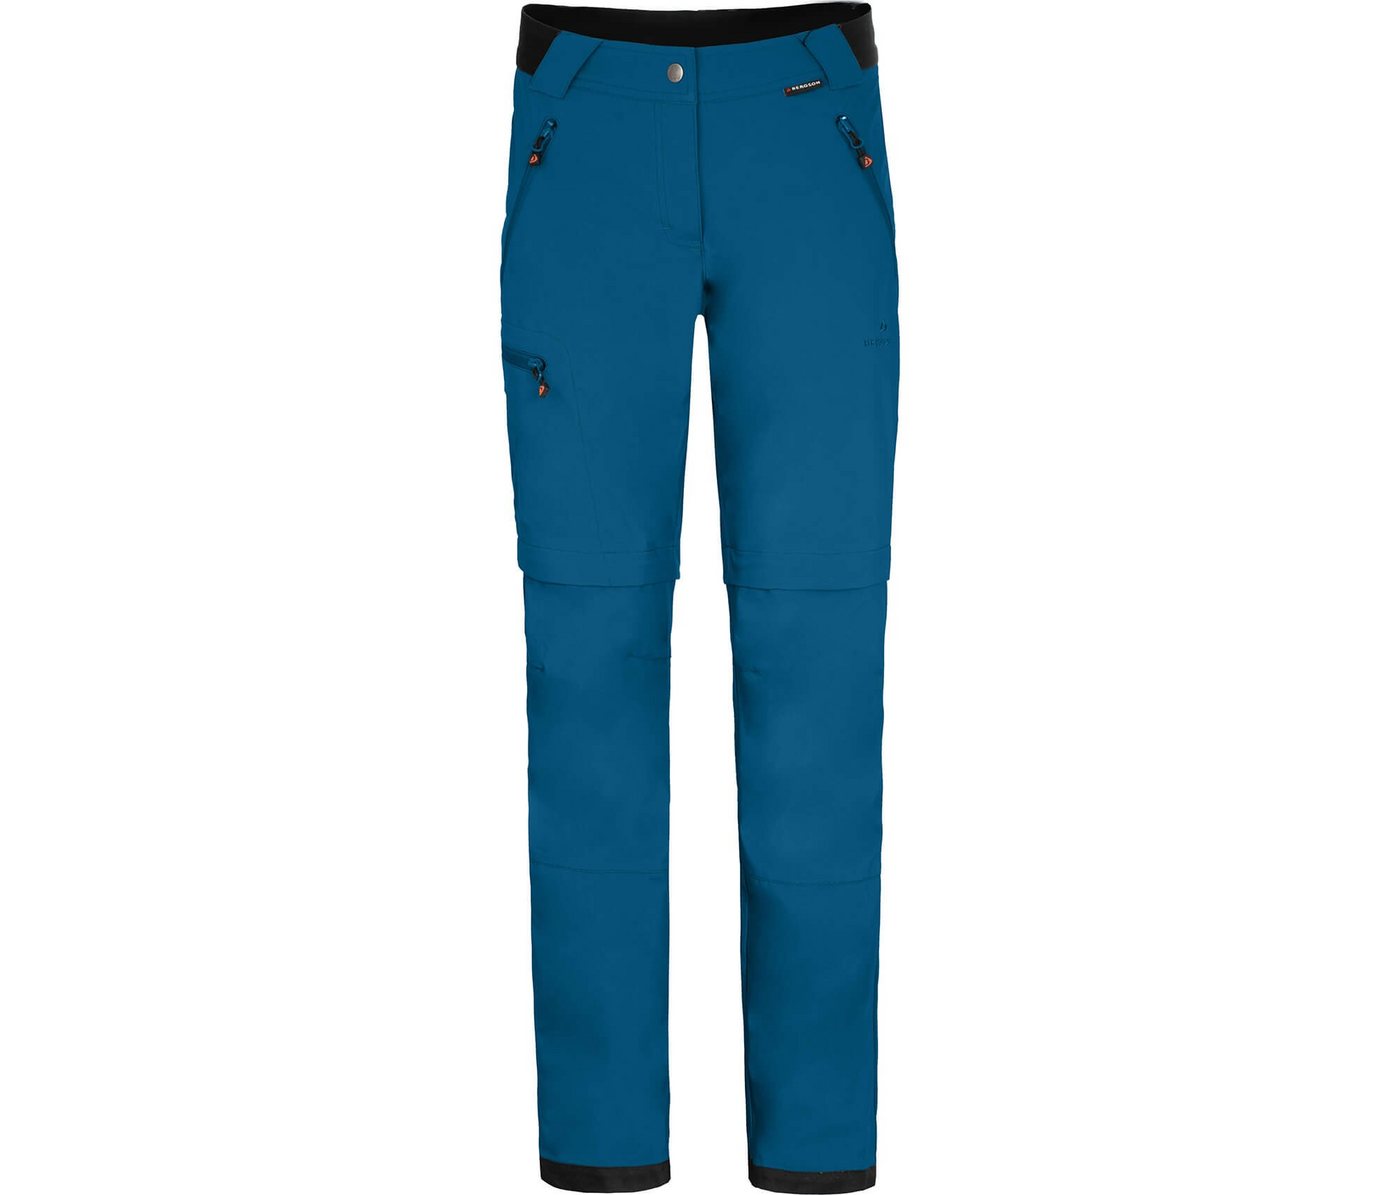 Bergson Zip off Hose TESSE Zipp Off Damen Softshellhose, winddicht, strapazierfähig, Kurzgrößen, Saphir blau › blau  - Onlineshop OTTO